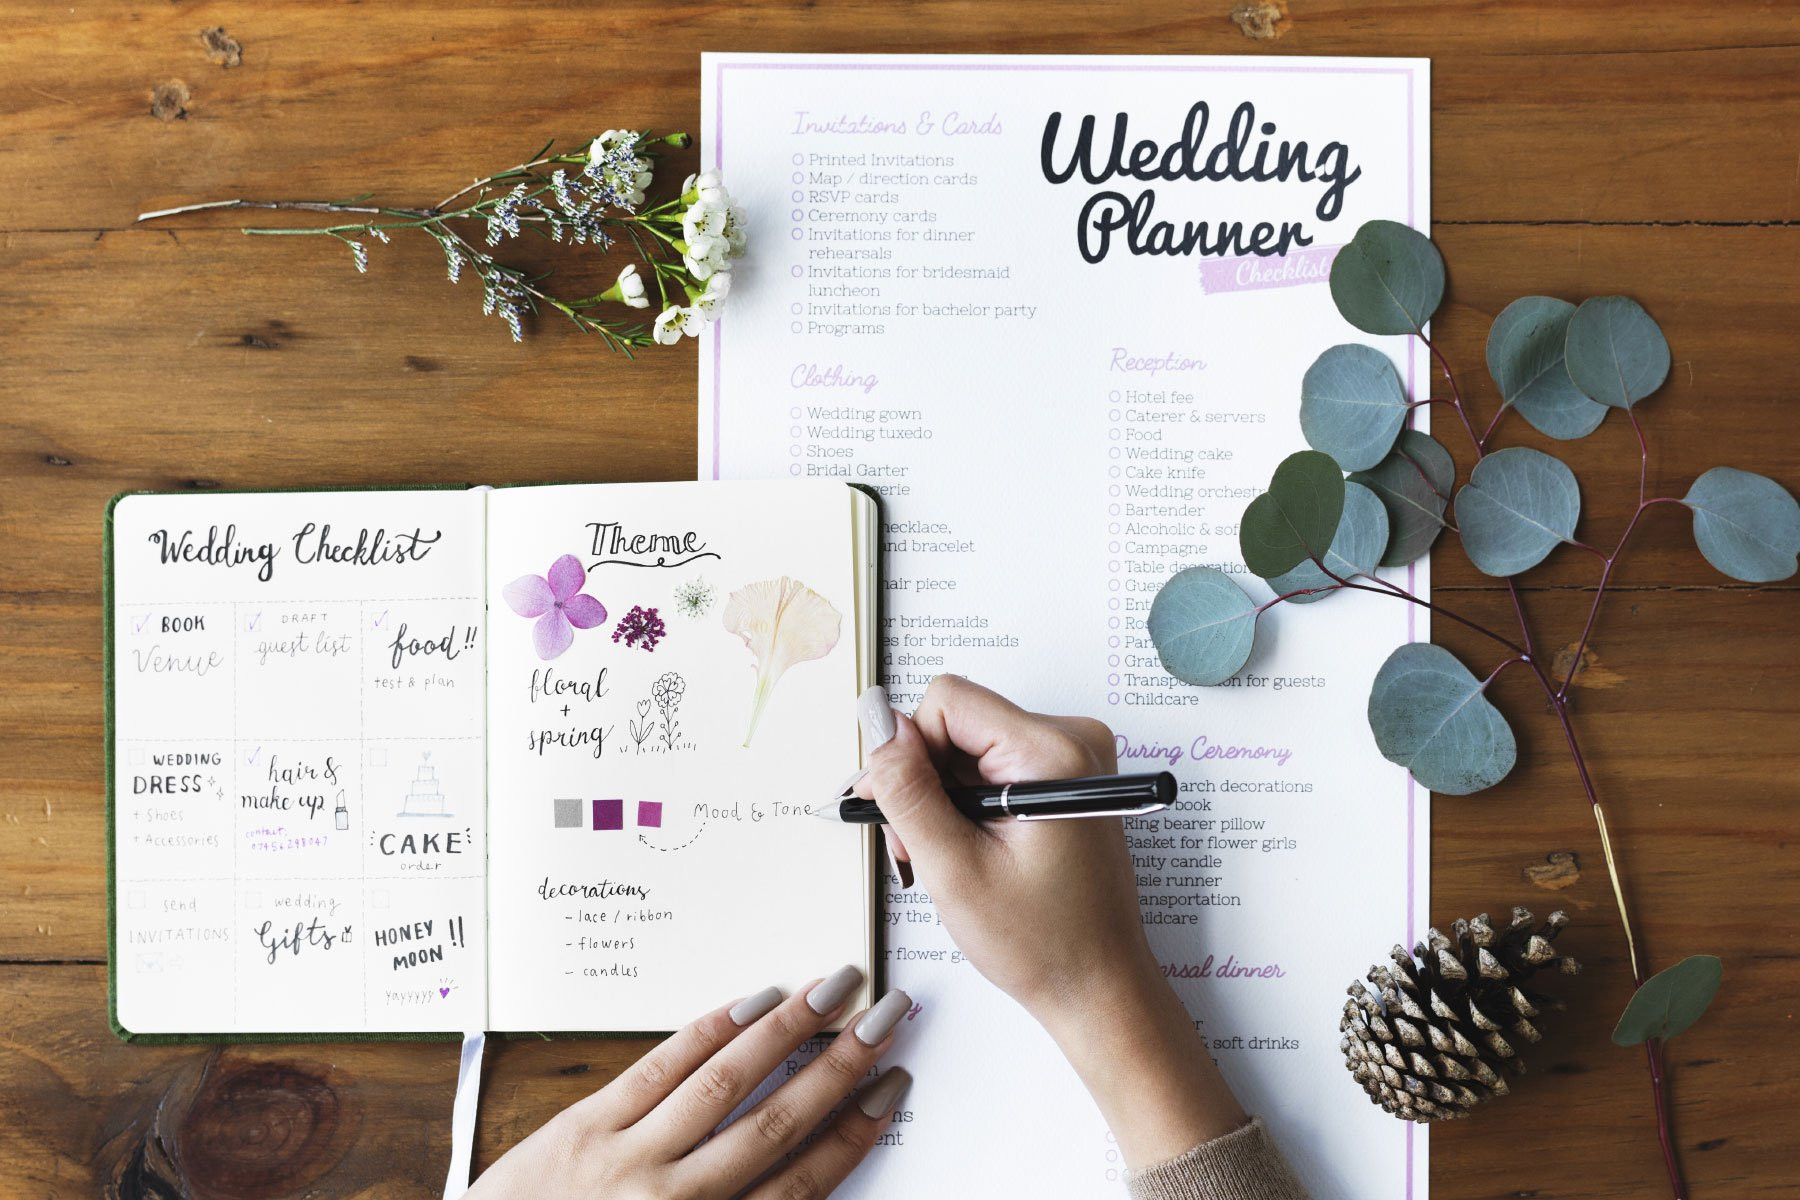 Hochzeit Planung
 Checklisten für Planung eurer Hochzeit Damit ihr